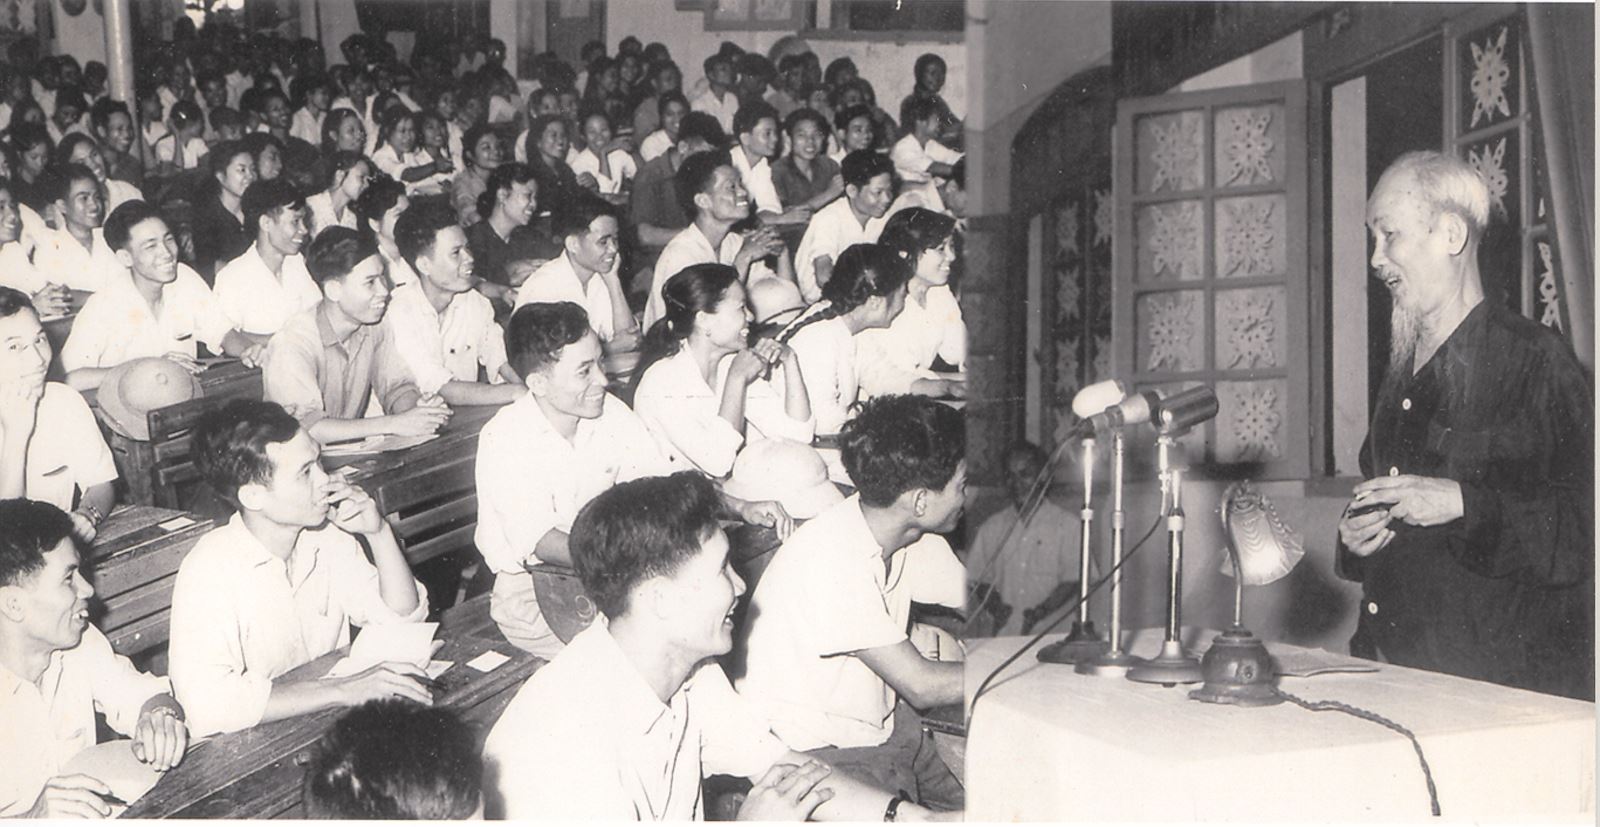 Tư tưởng Hồ Chí Minh về đấu tranh chống chủ nghĩa cá nhân, nâng cao đạo đức cách mạng